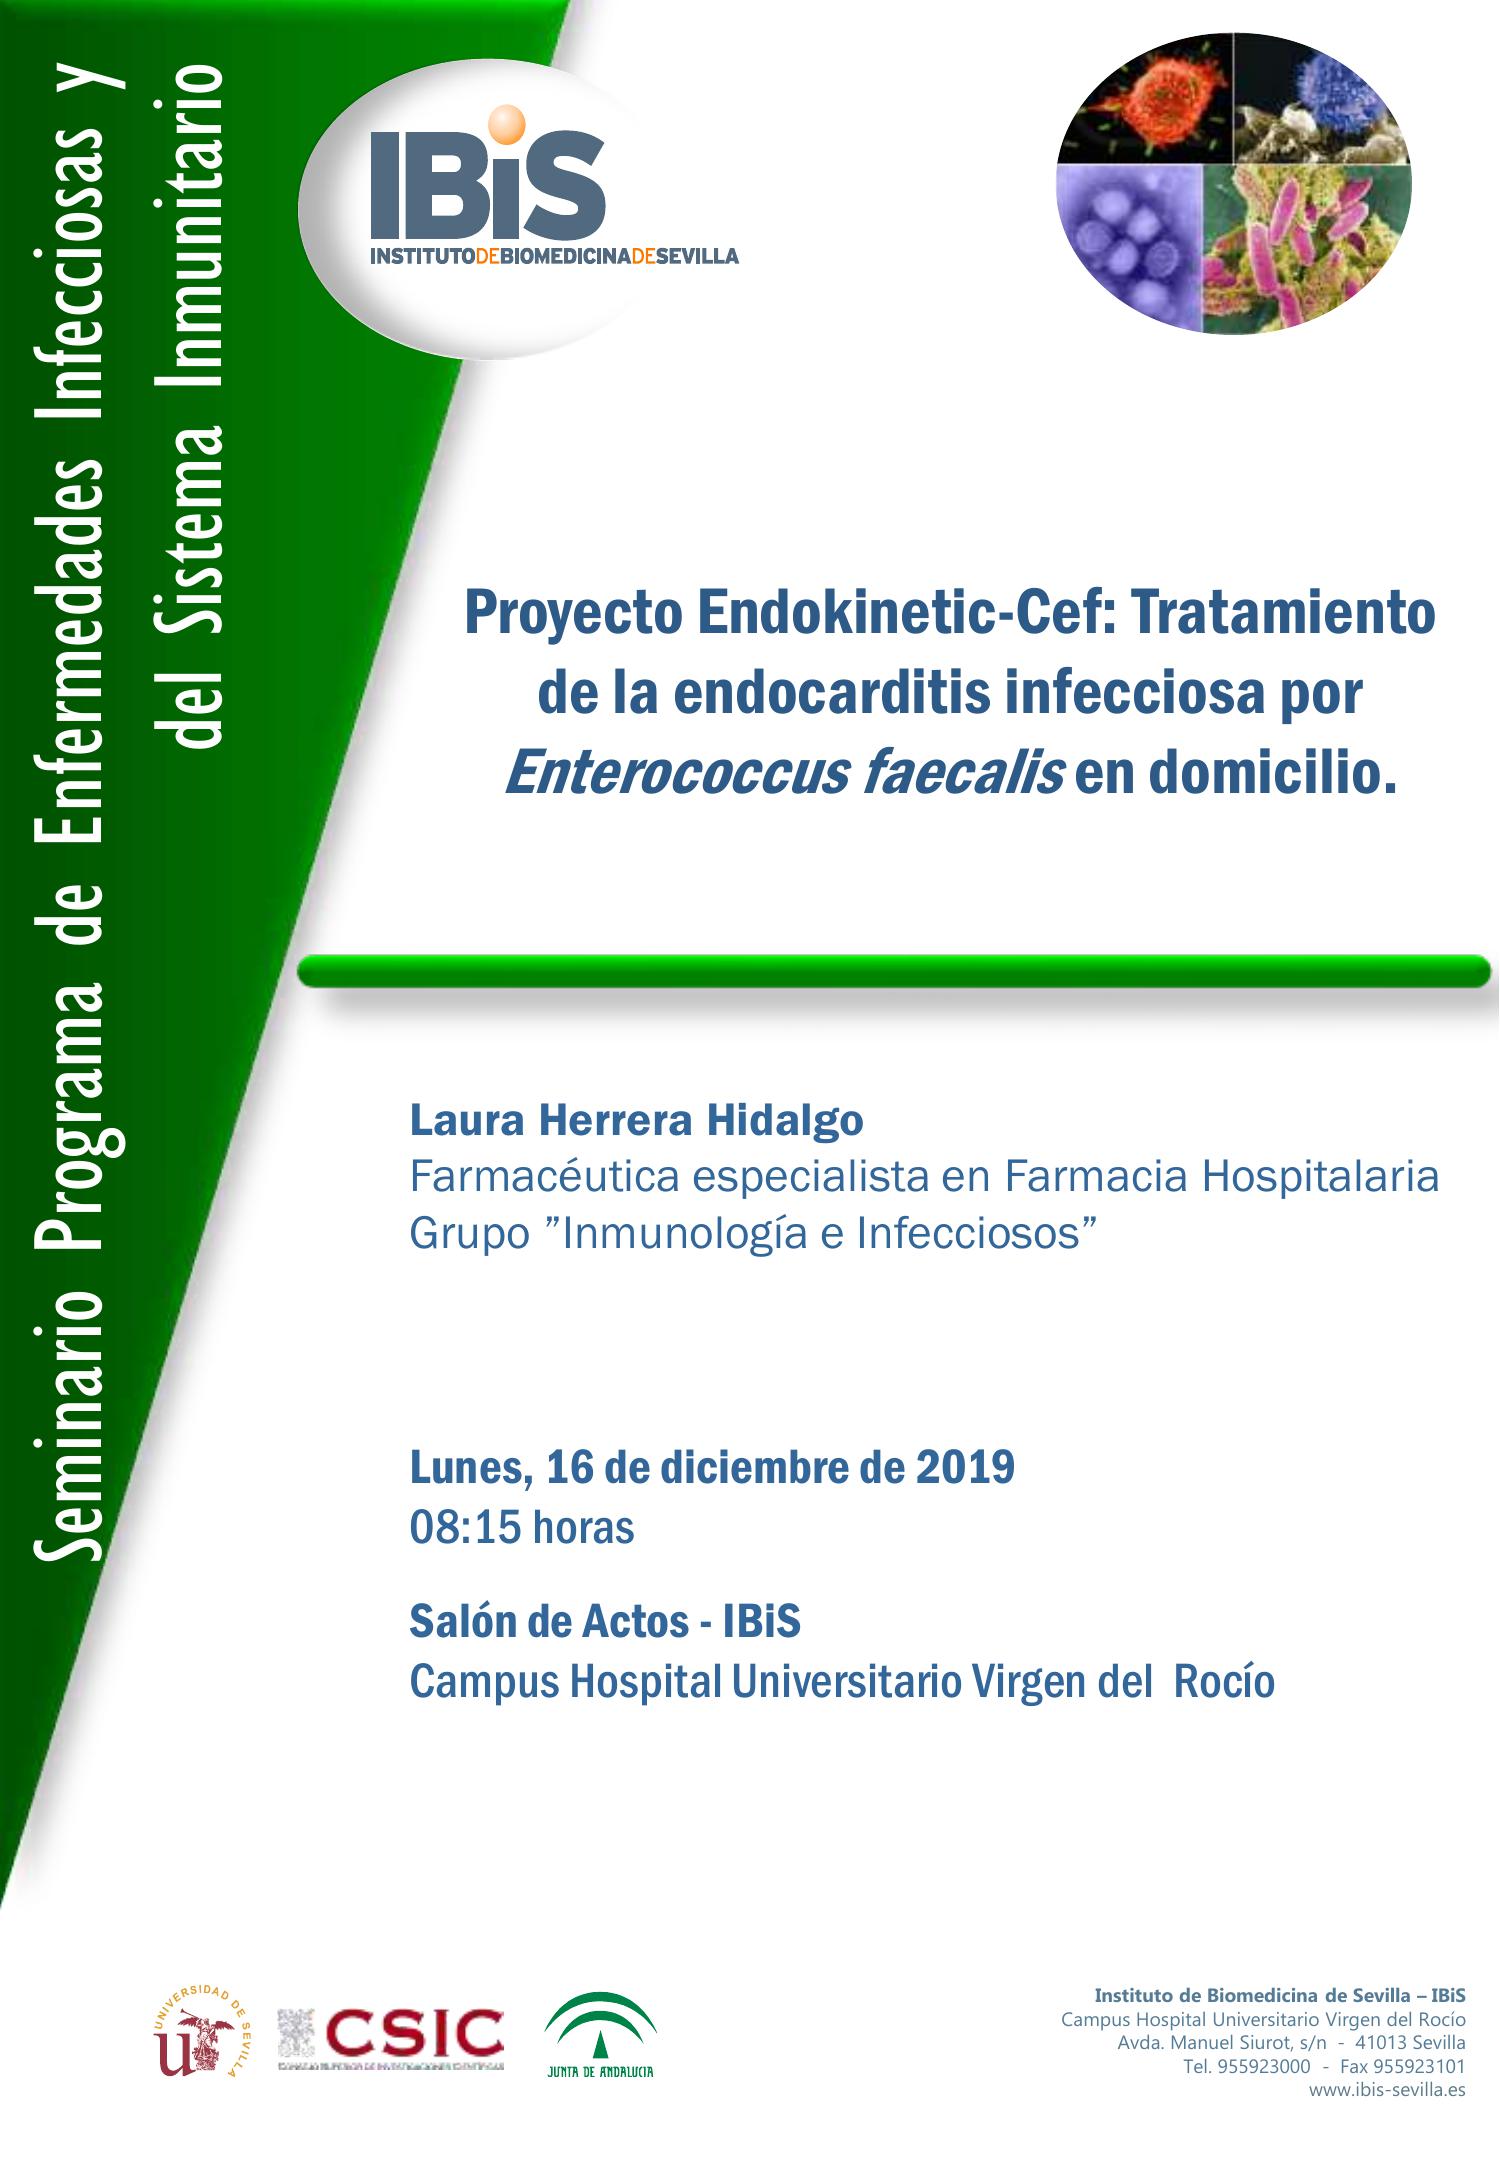 Poster: Proyecto Endokinetic-Cef: Tratamiento de la endocarditis infecciosa por Enterococcus faecalis en domicilio.